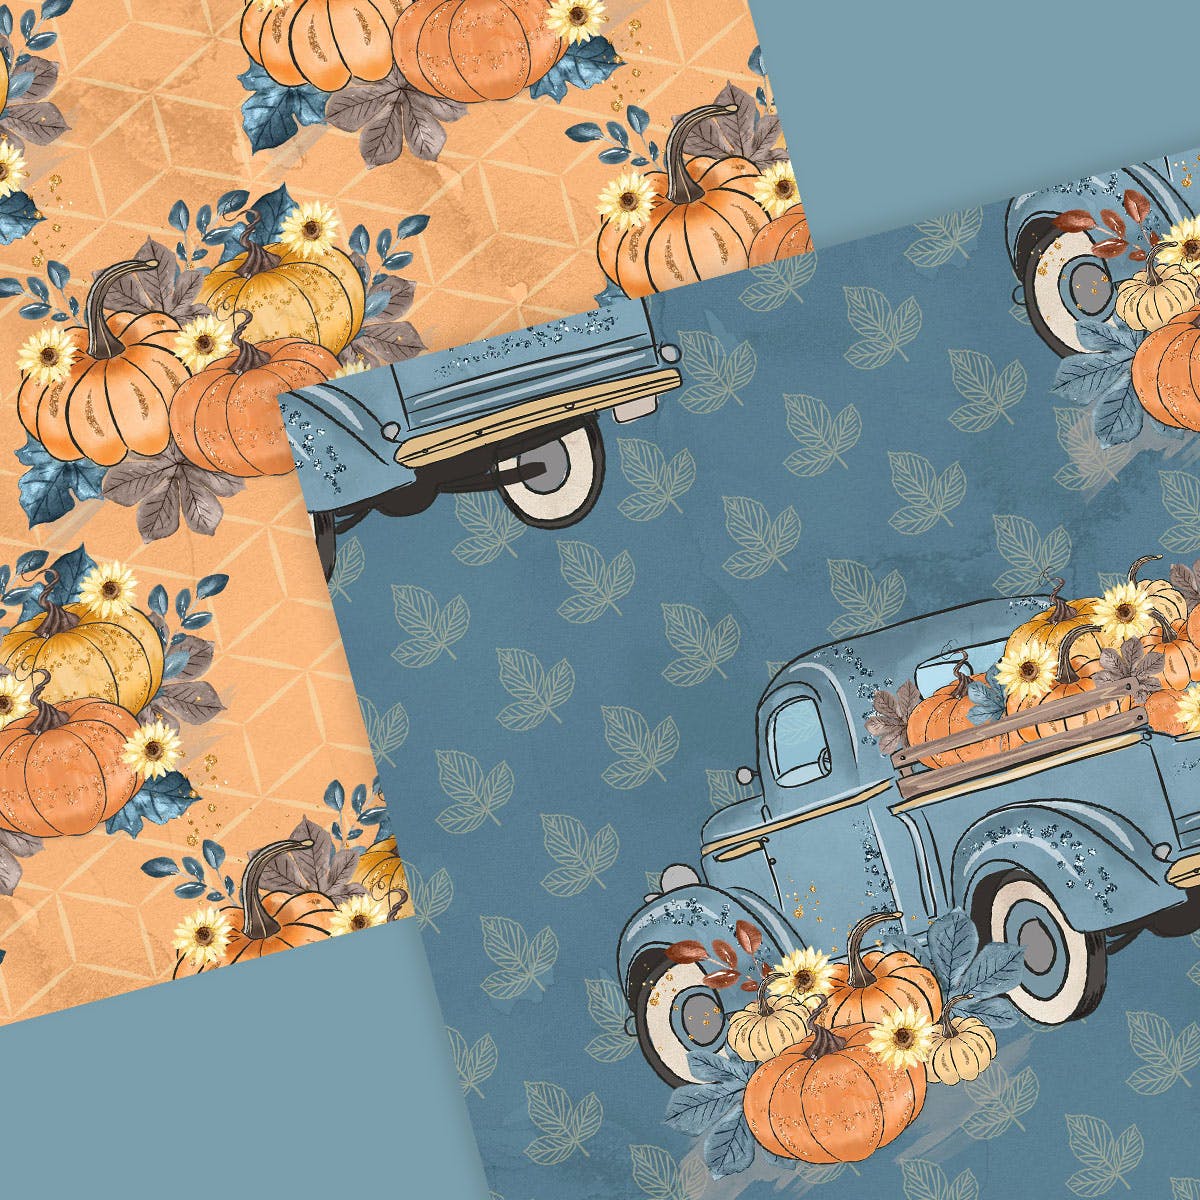 蓝色水彩手绘南瓜车数码纸张图案设计素材 Pumpkin Truck Blue digital paper pack插图(5)